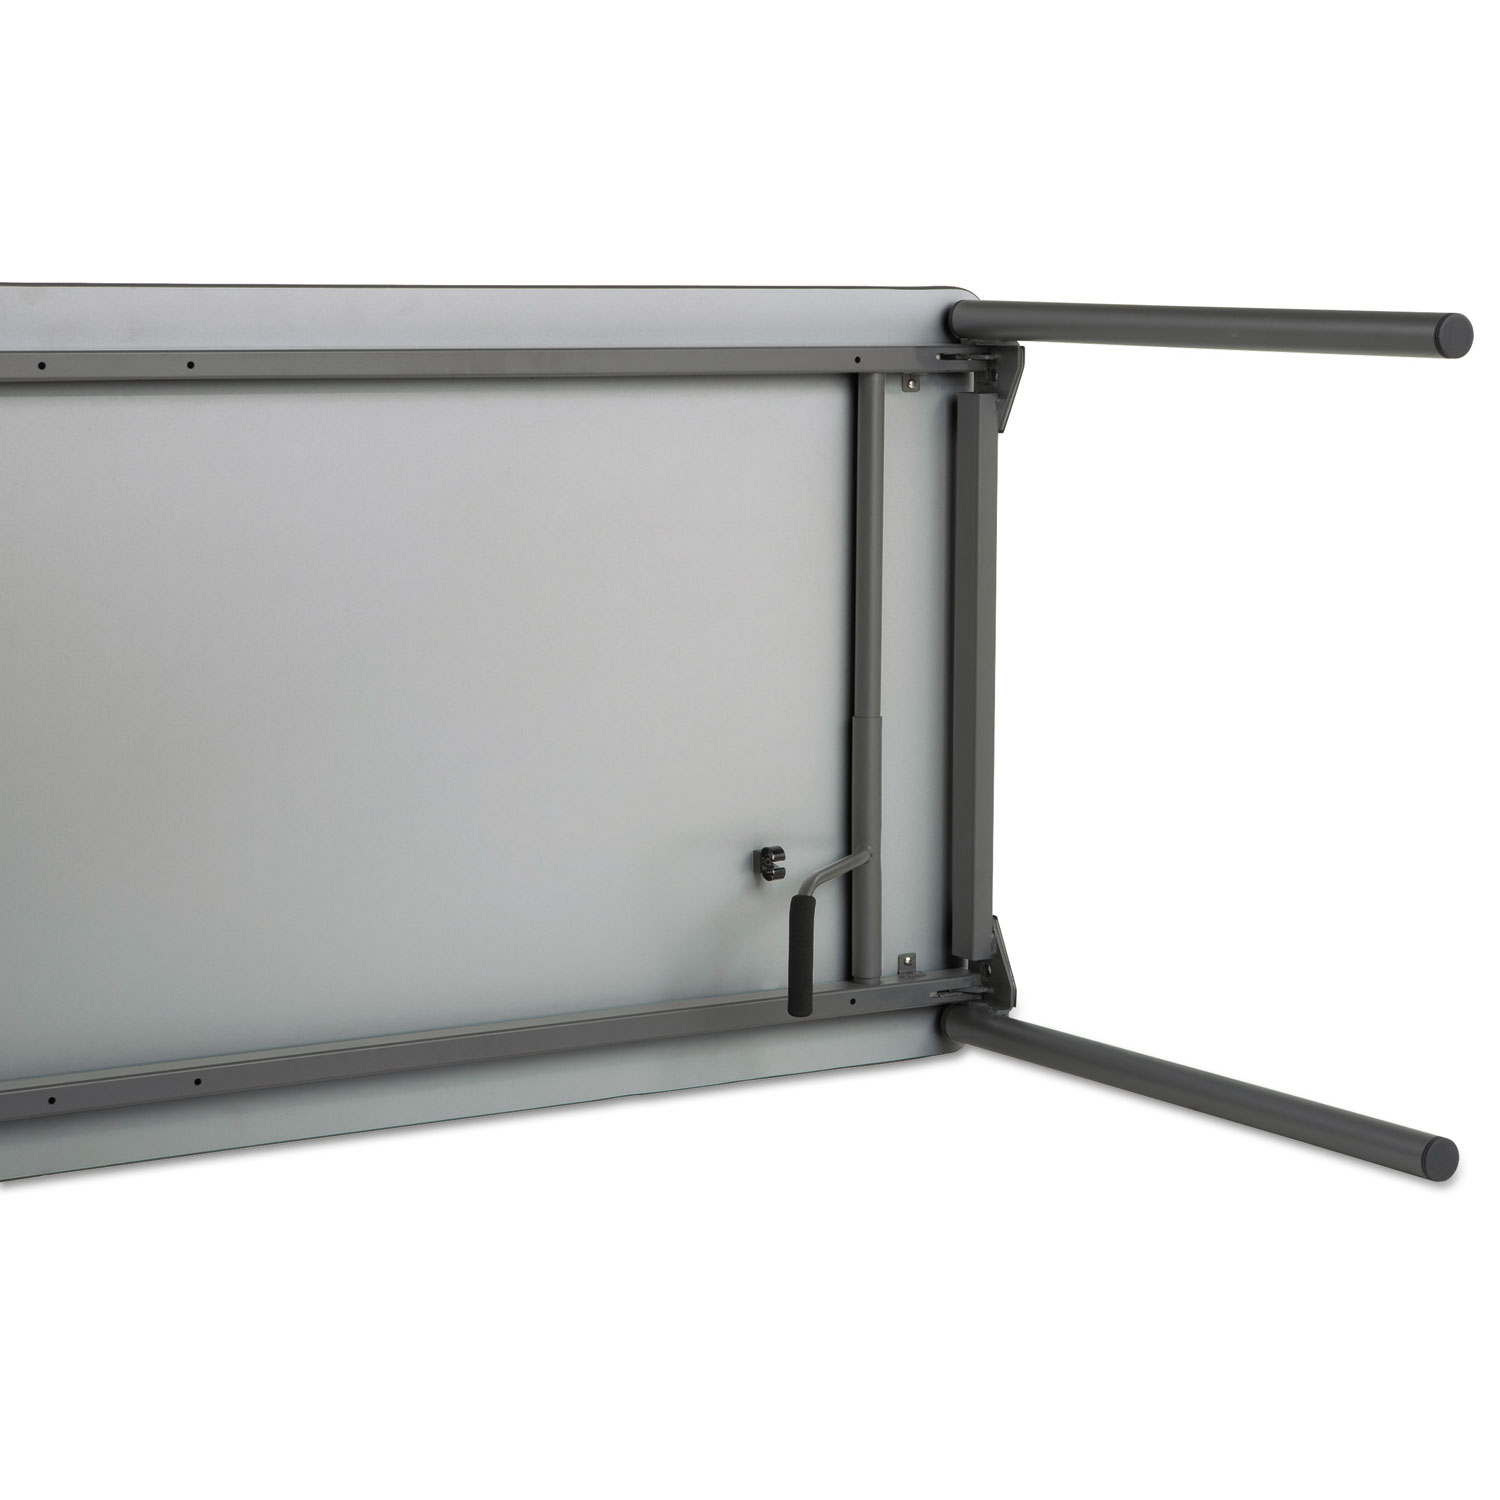 Maxx Legroom Rectangular Folding Table, 96w x 30d x 29-1/2h, Walnut/Charcoal